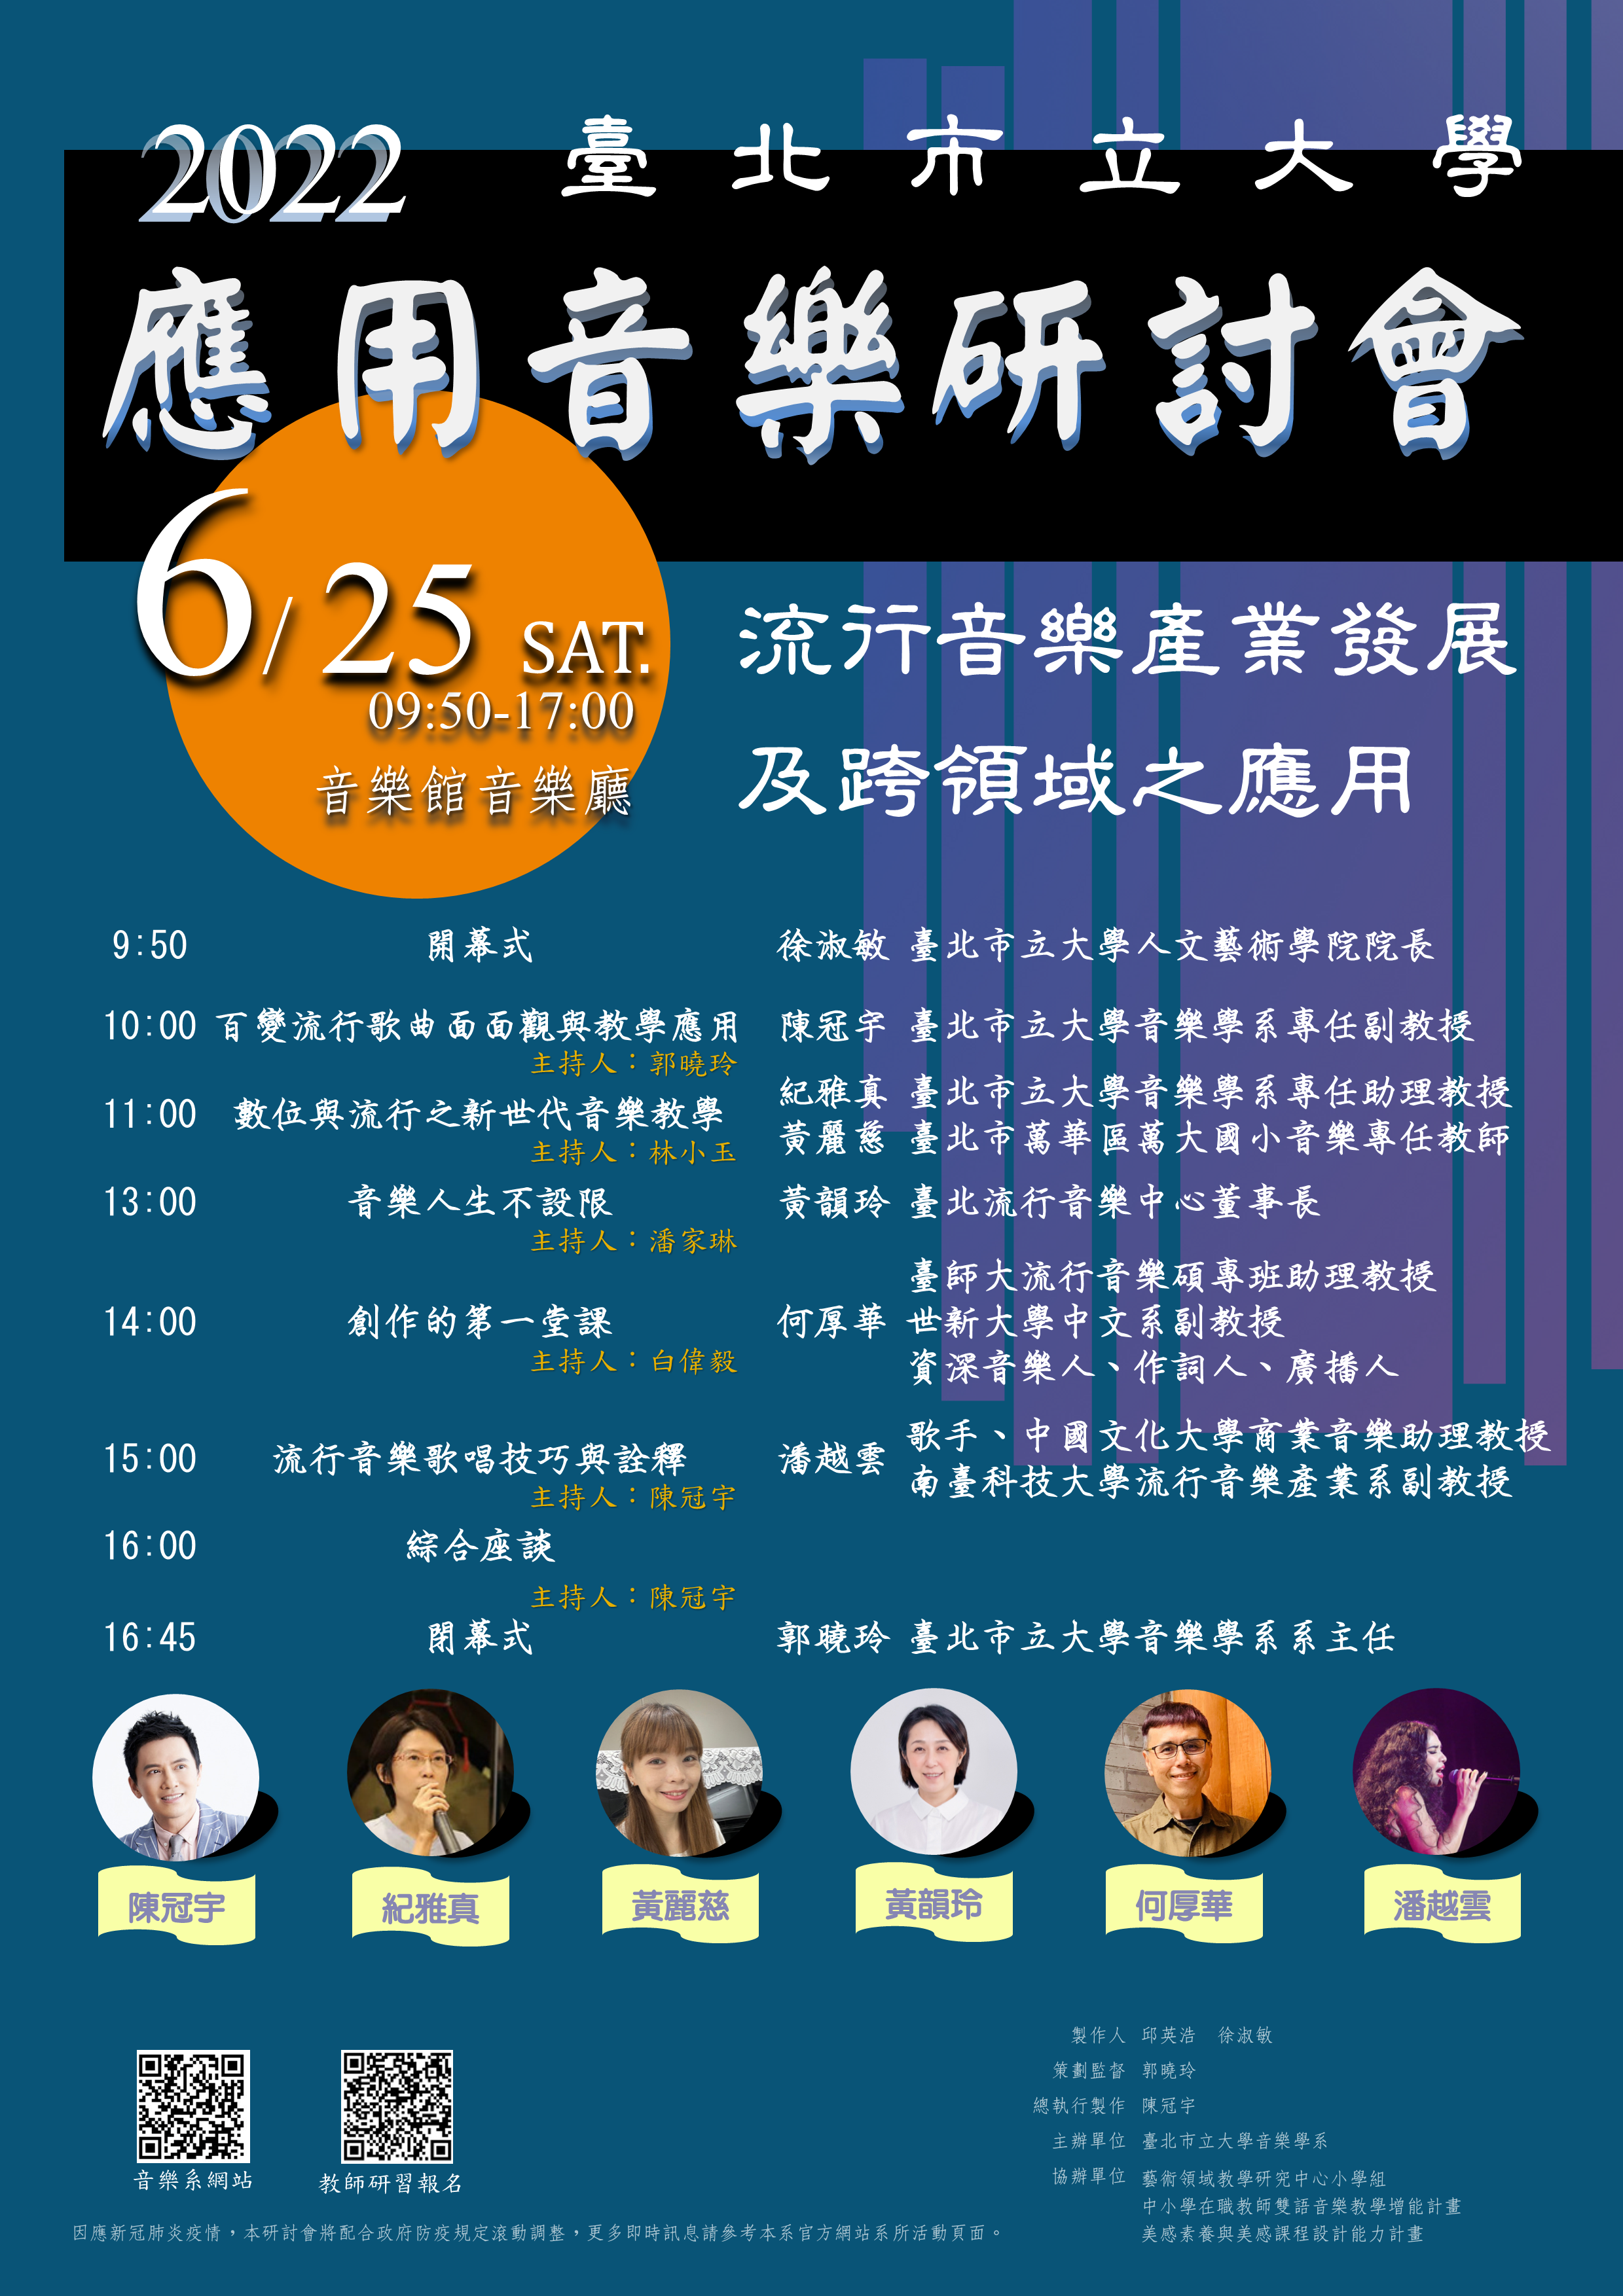 臺北市立大學音樂學系「2022應用音樂研討會－流行音樂產業發展及跨領域之應用」研討會